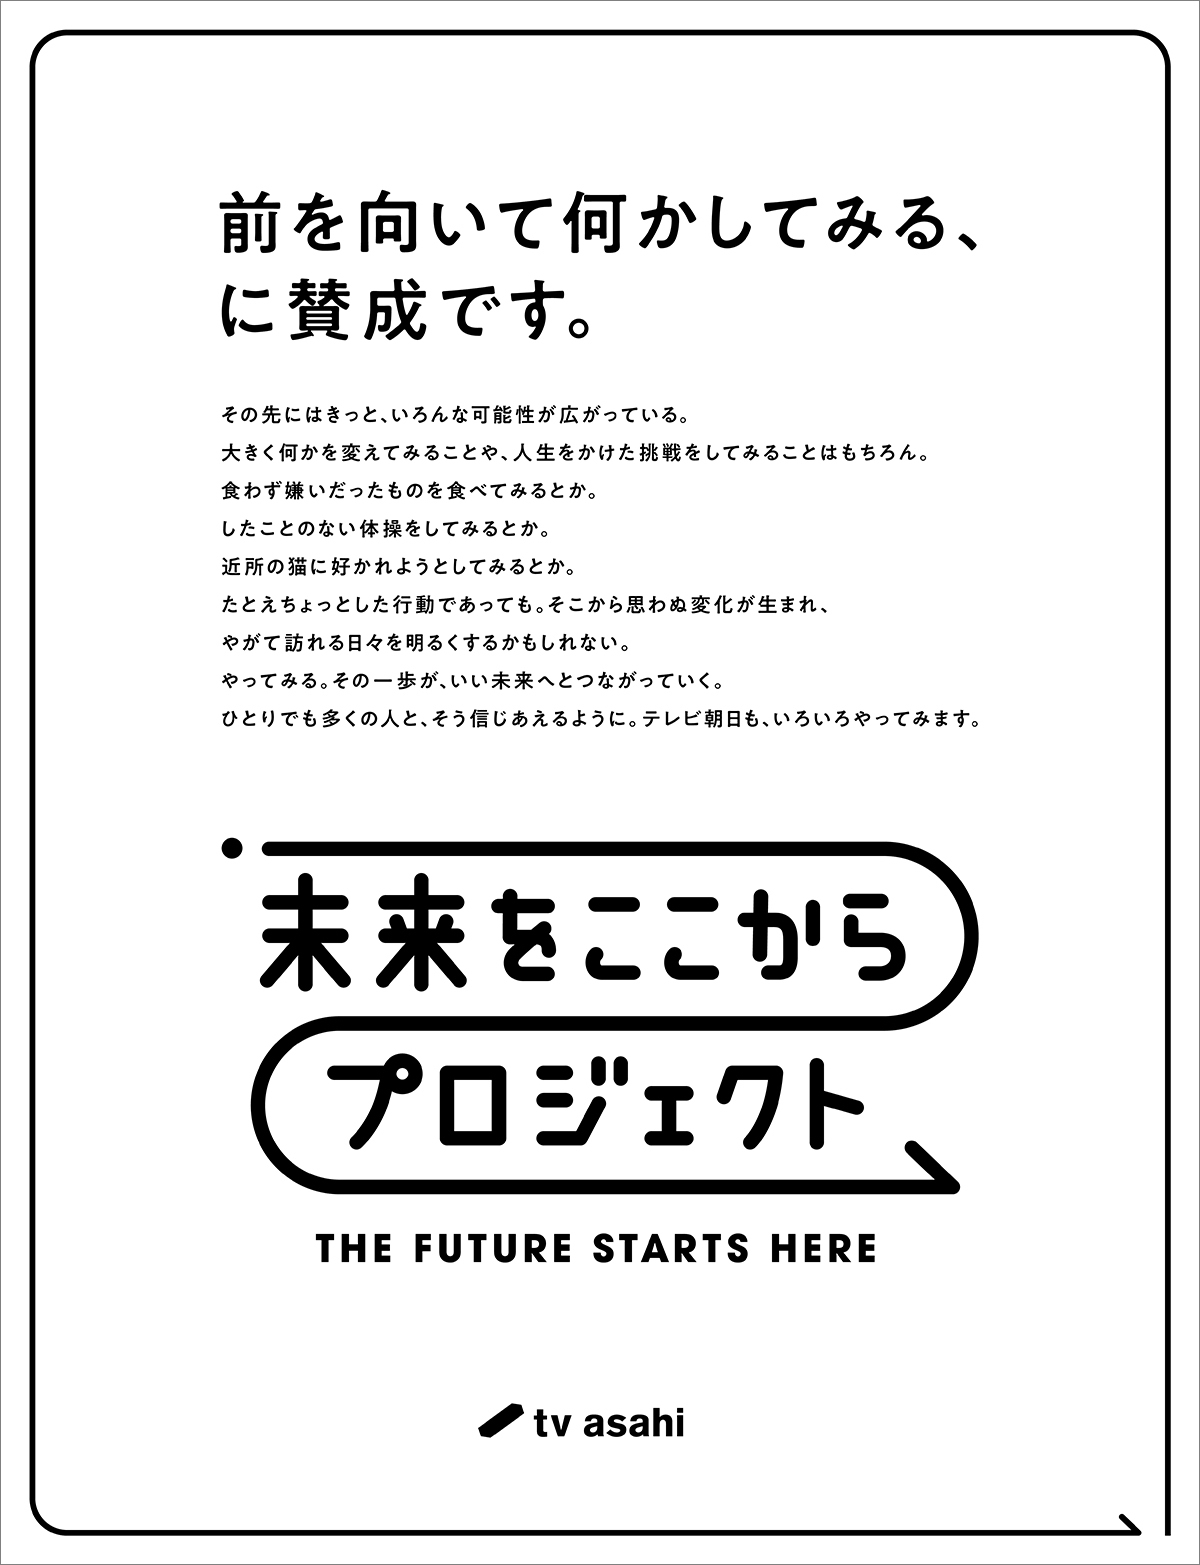 1月11日の朝日新聞に掲載されたステートメント広告。